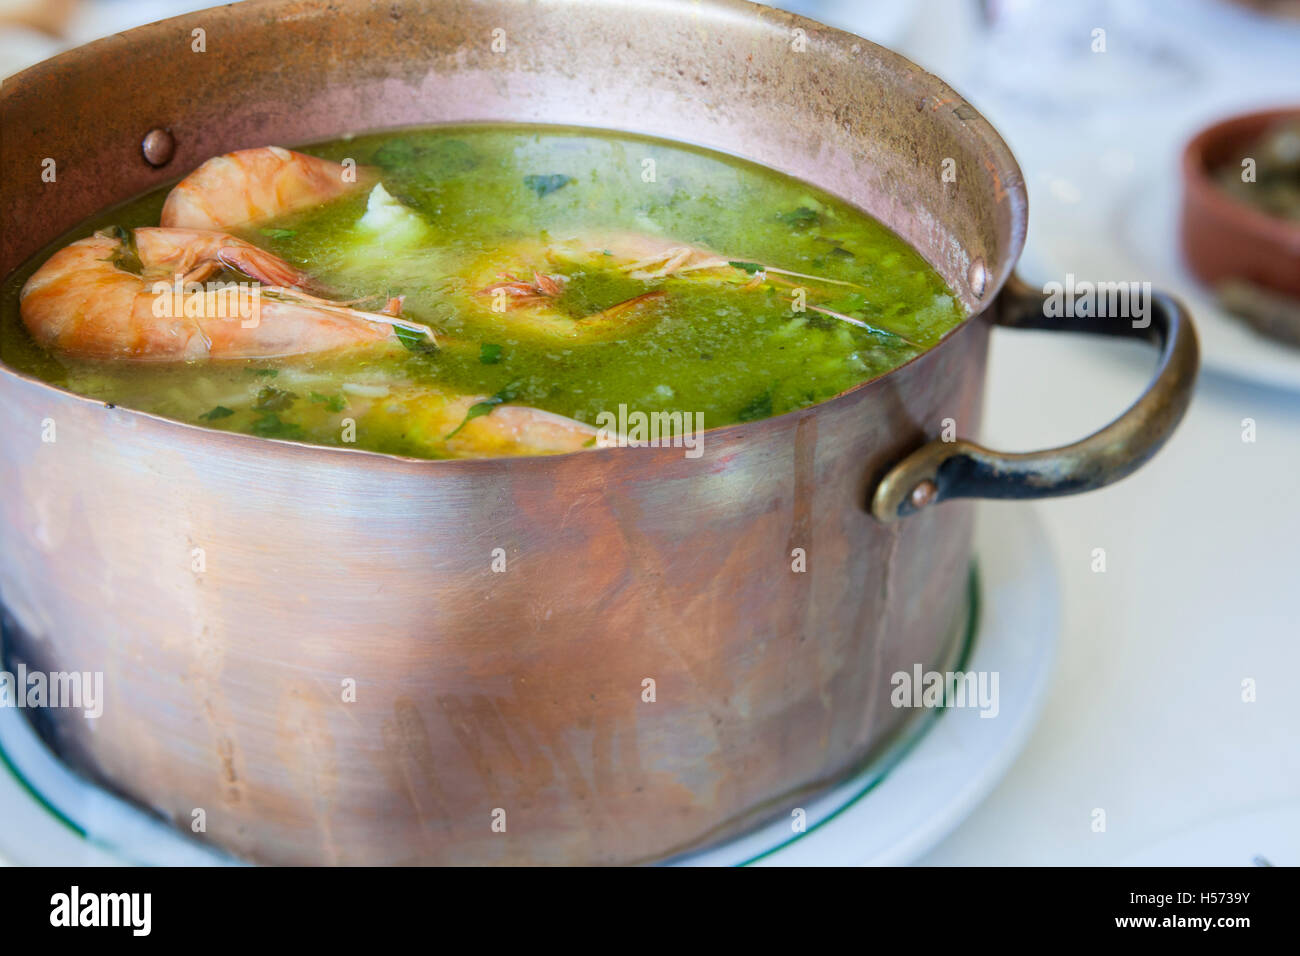 Arroz de Tamboril or soupy seafood rice, portuguese recipe Stock Photo